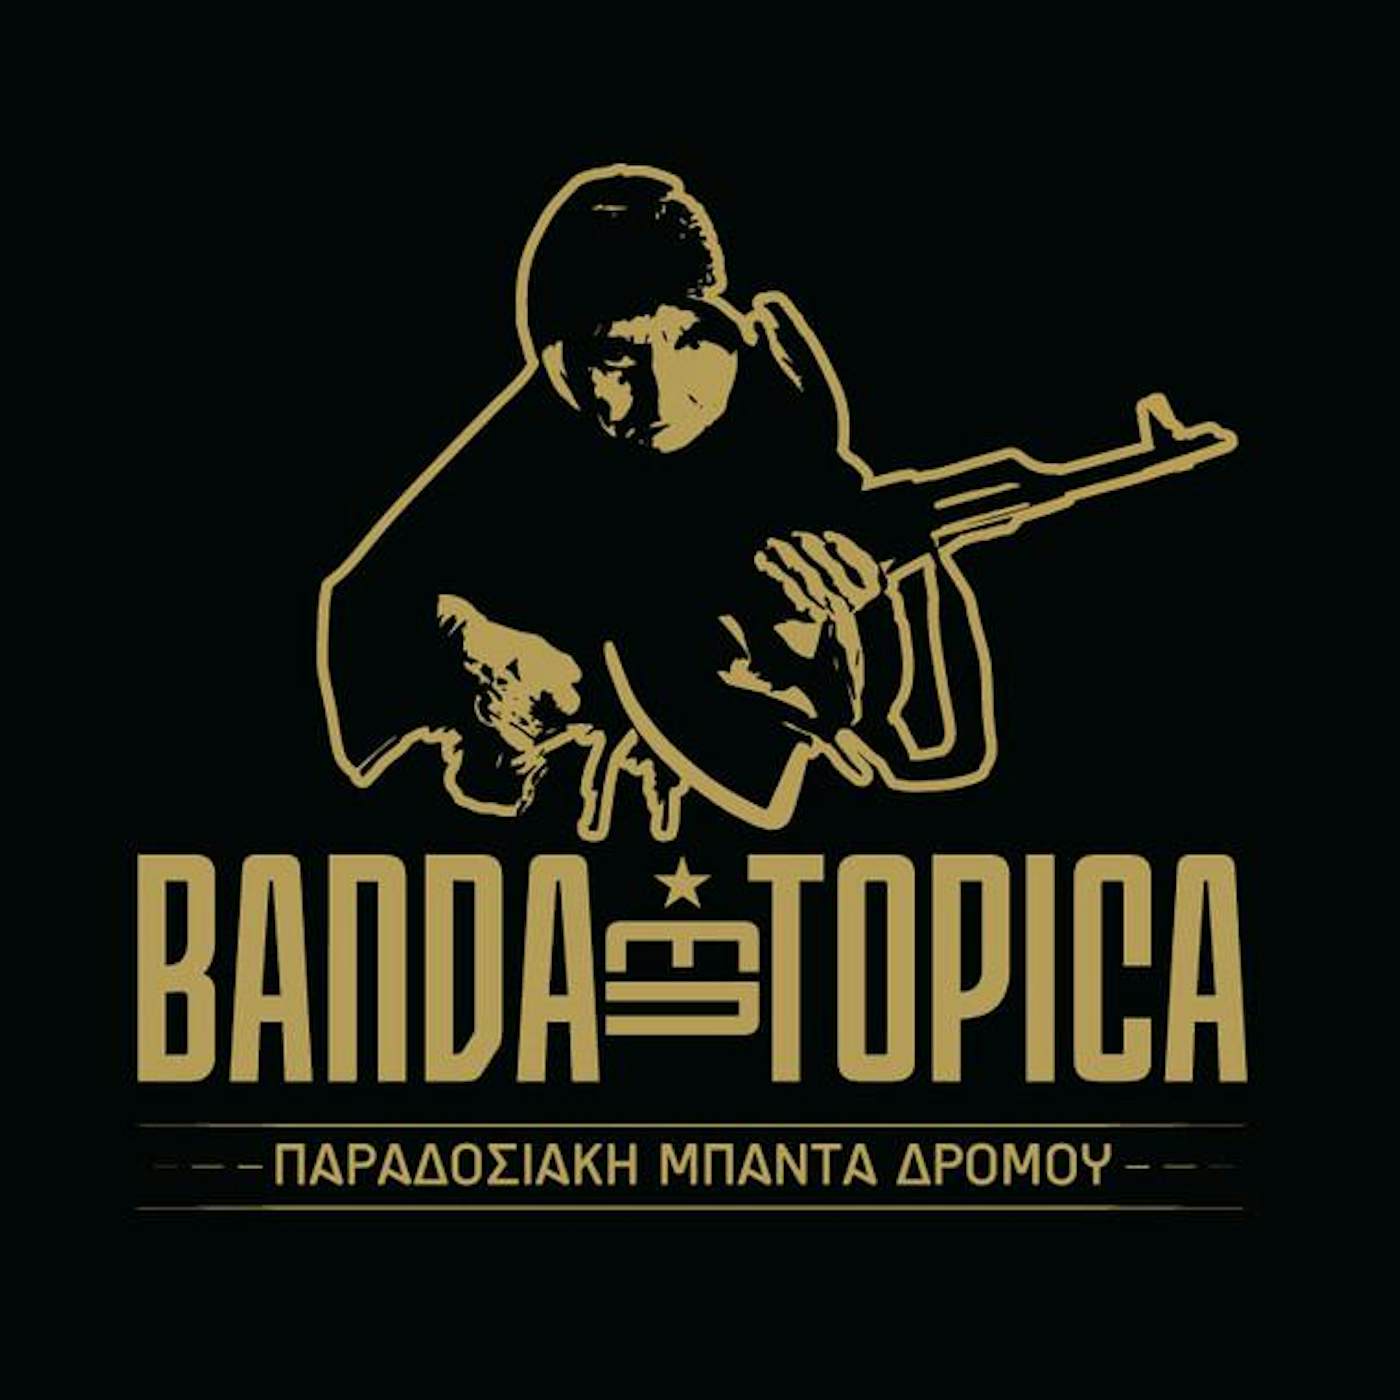 Banda Entopica